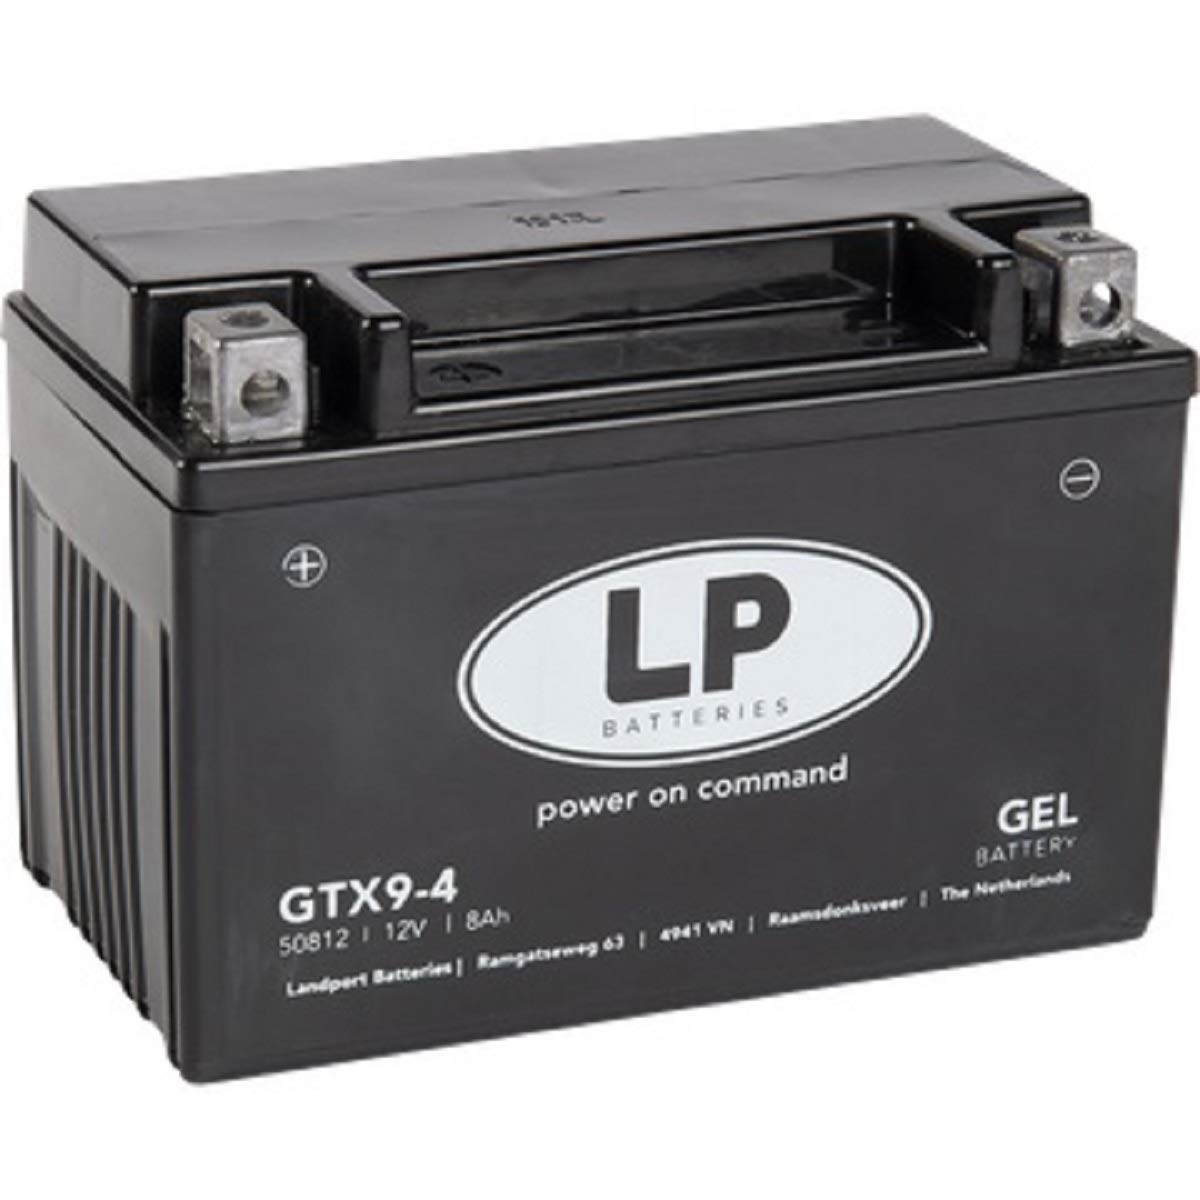 Landport Gel Roller- u. Motorradbatterie GTX9-4 (YTX9-BS Gel) DIN 50812 von Landport